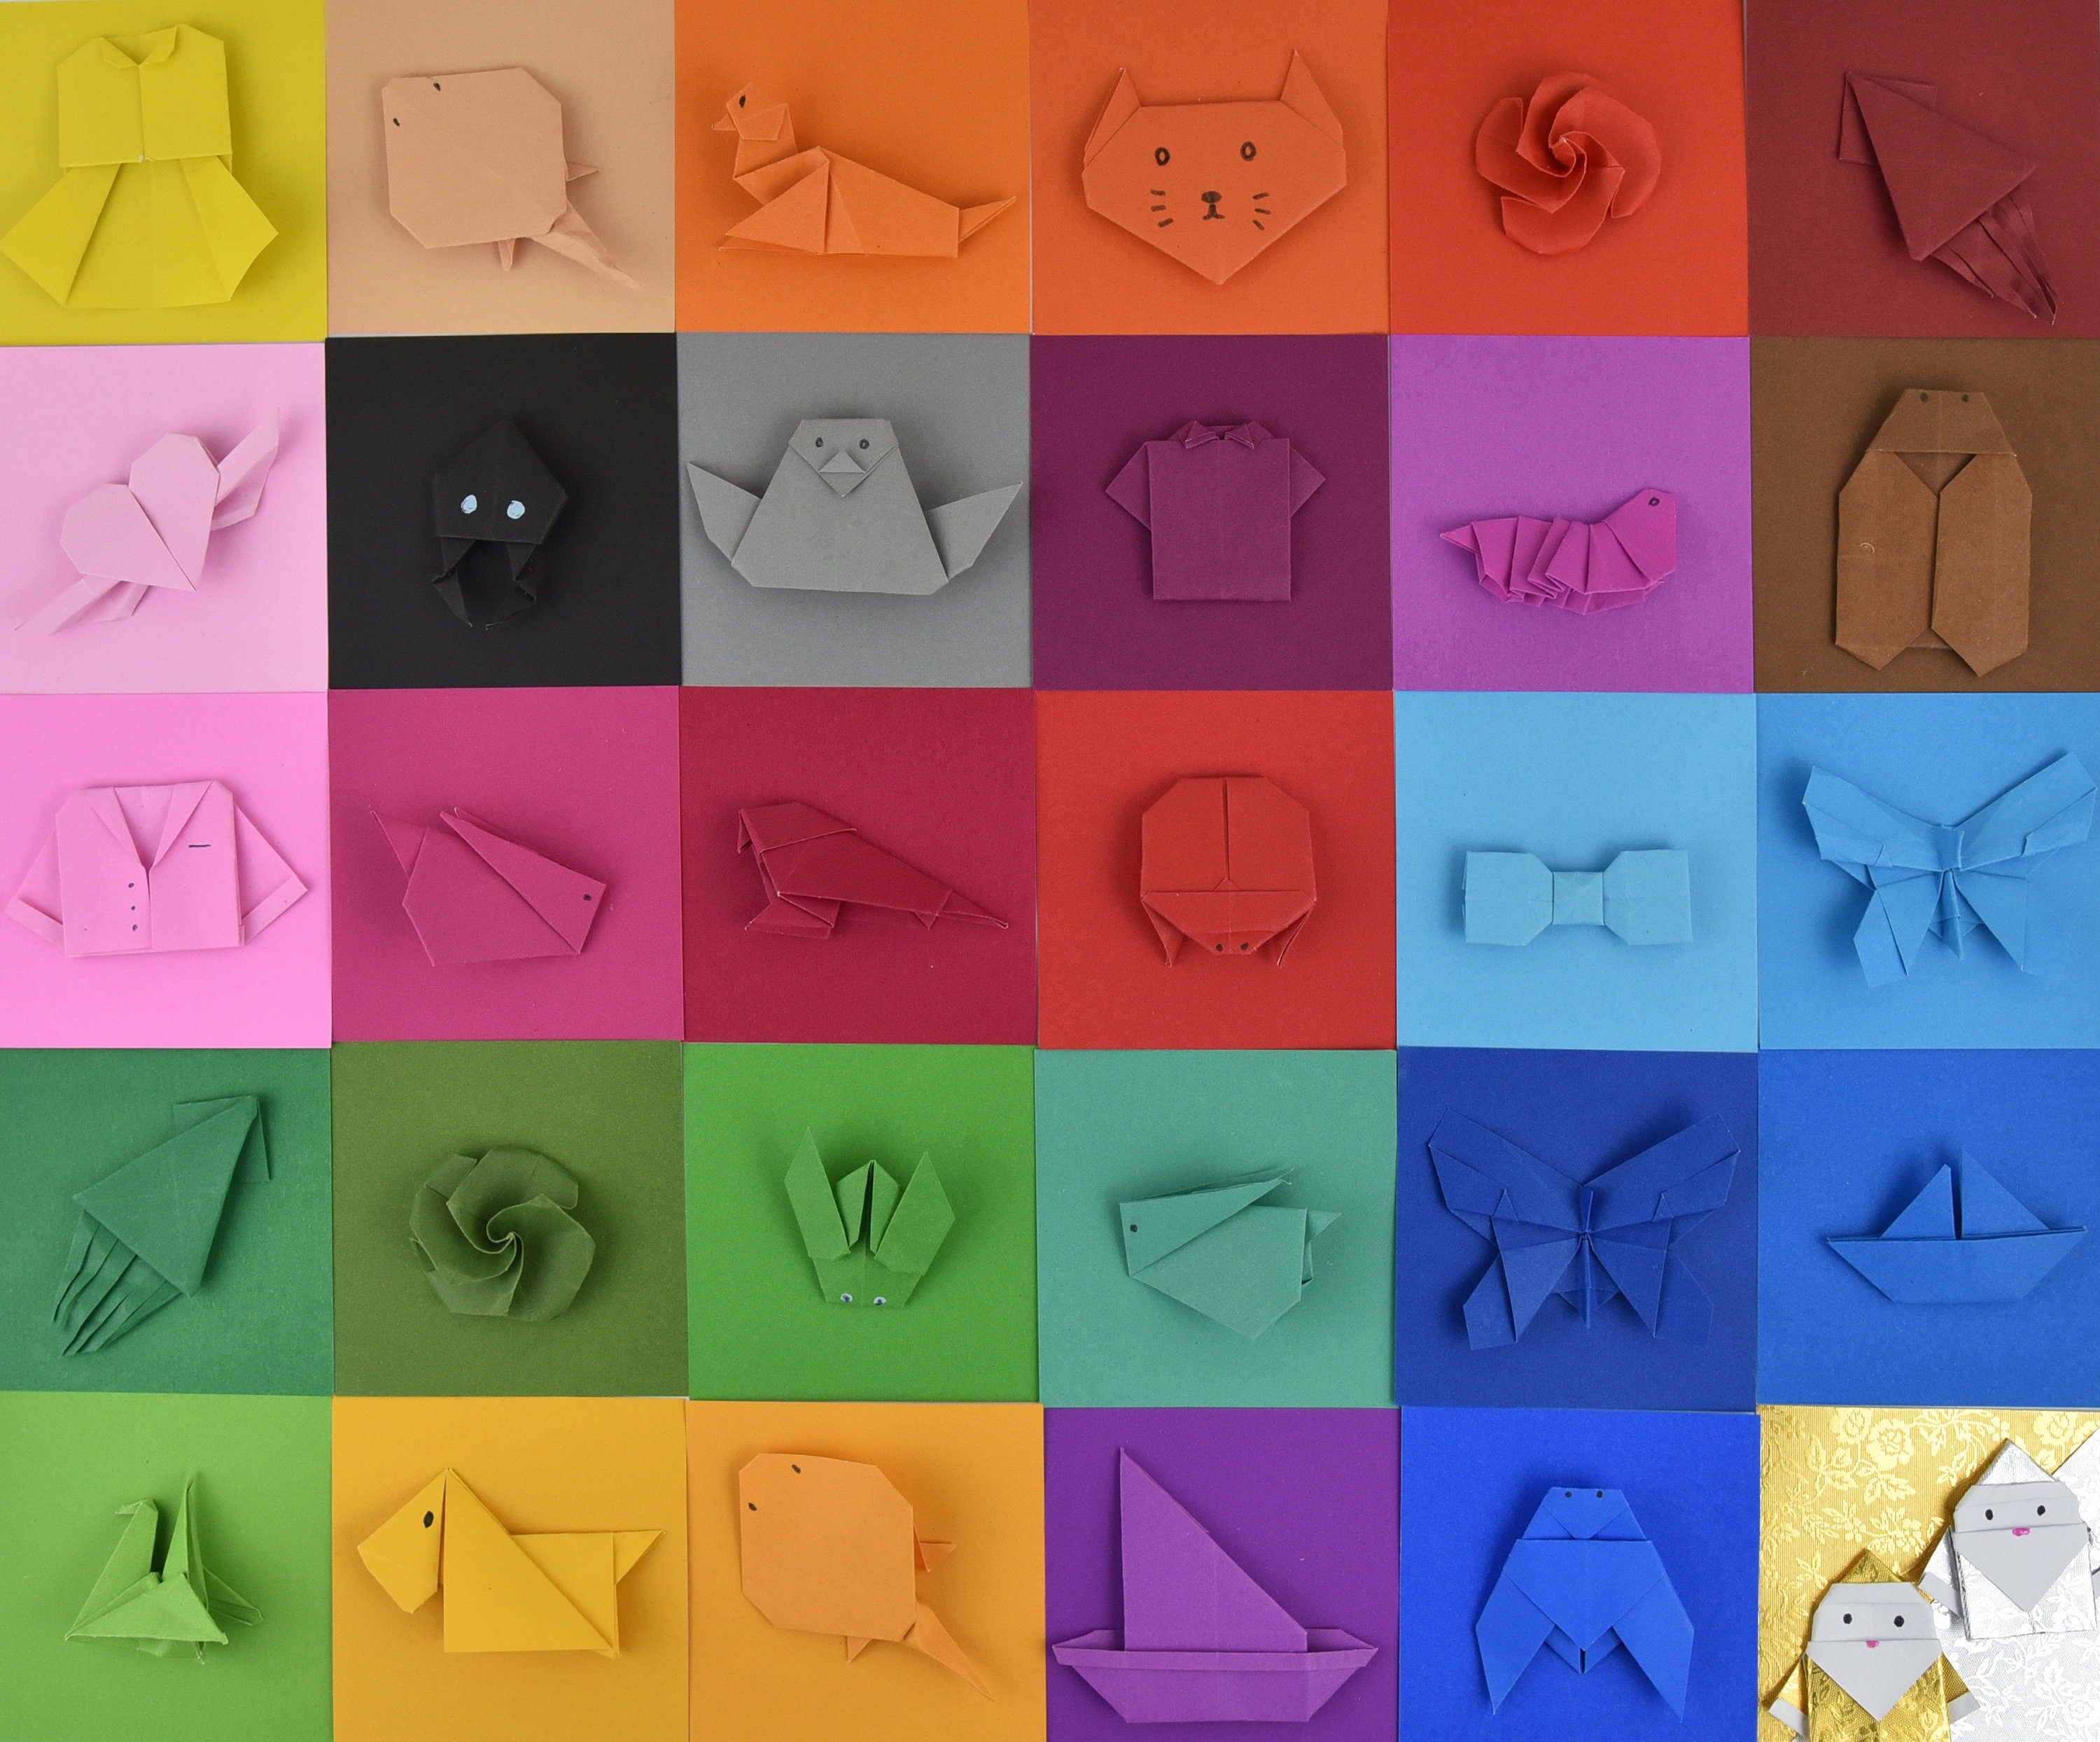 100 Hojas de Papel Origami - 6x6 pulgadas - Paquete de Papel Cuadrado para Plegar, Grullas de Origami y Decoración - S14